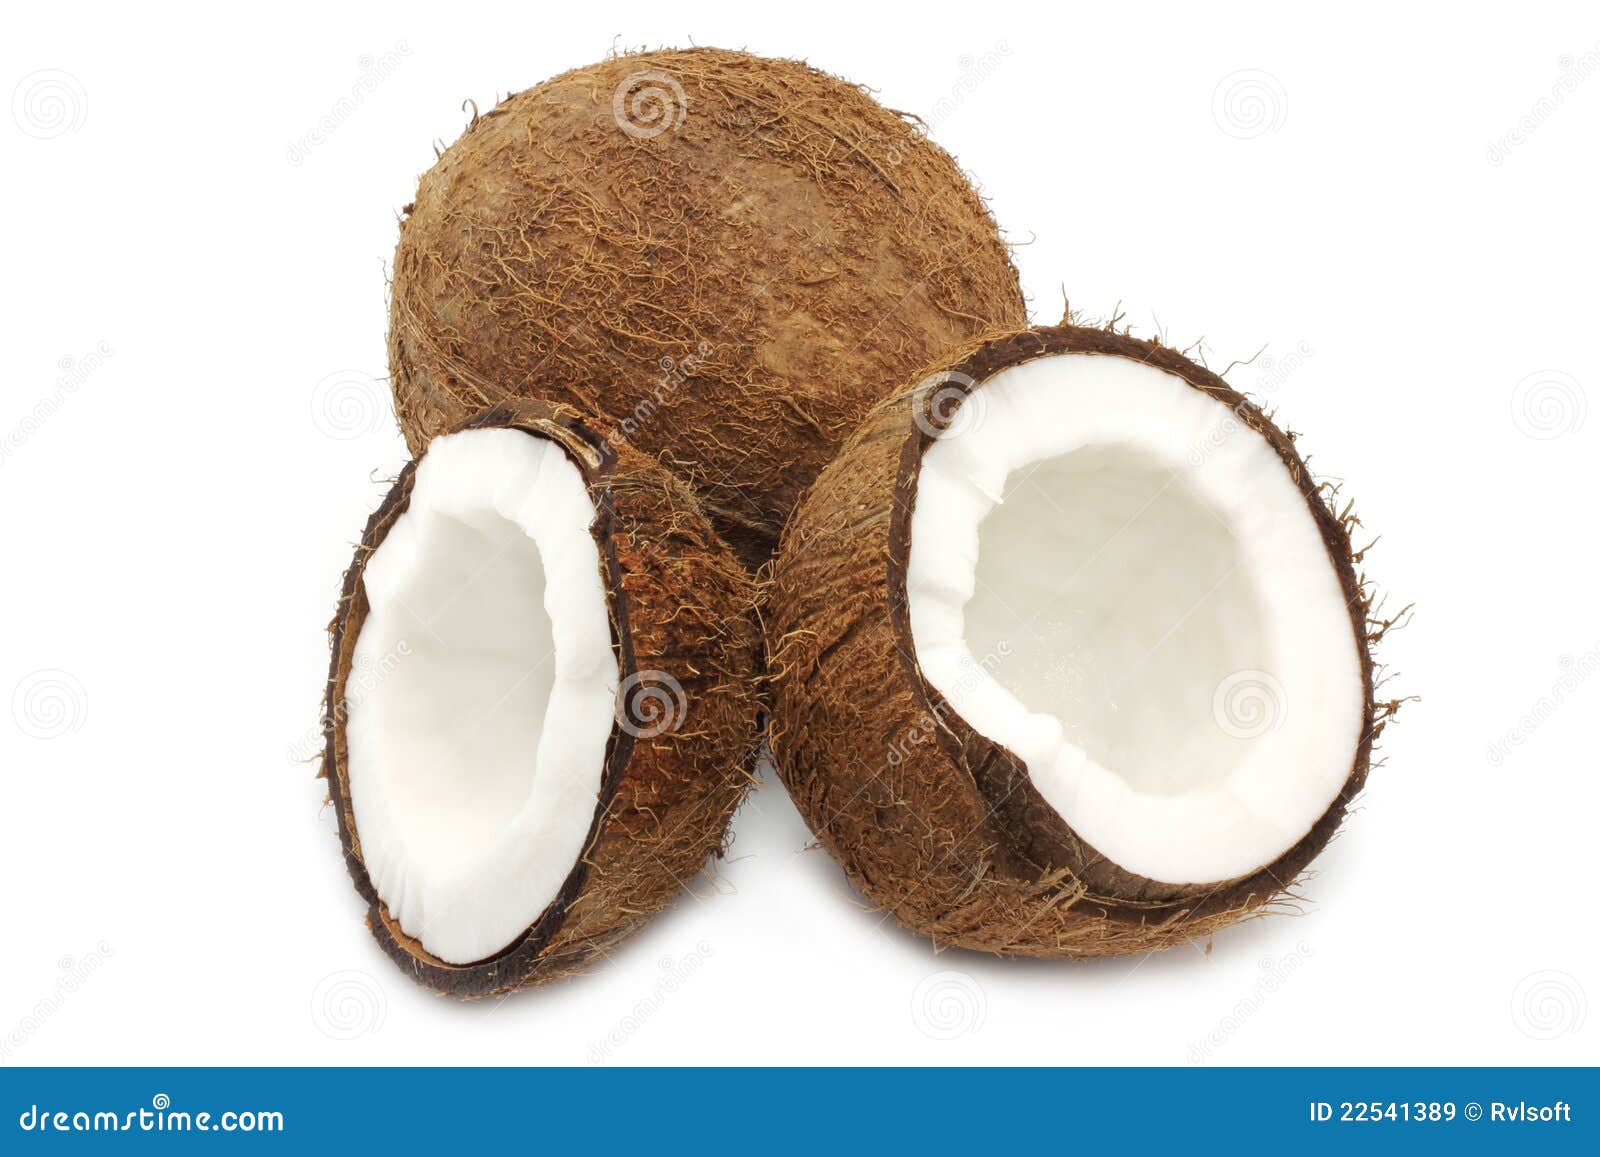 coconut fruit parts